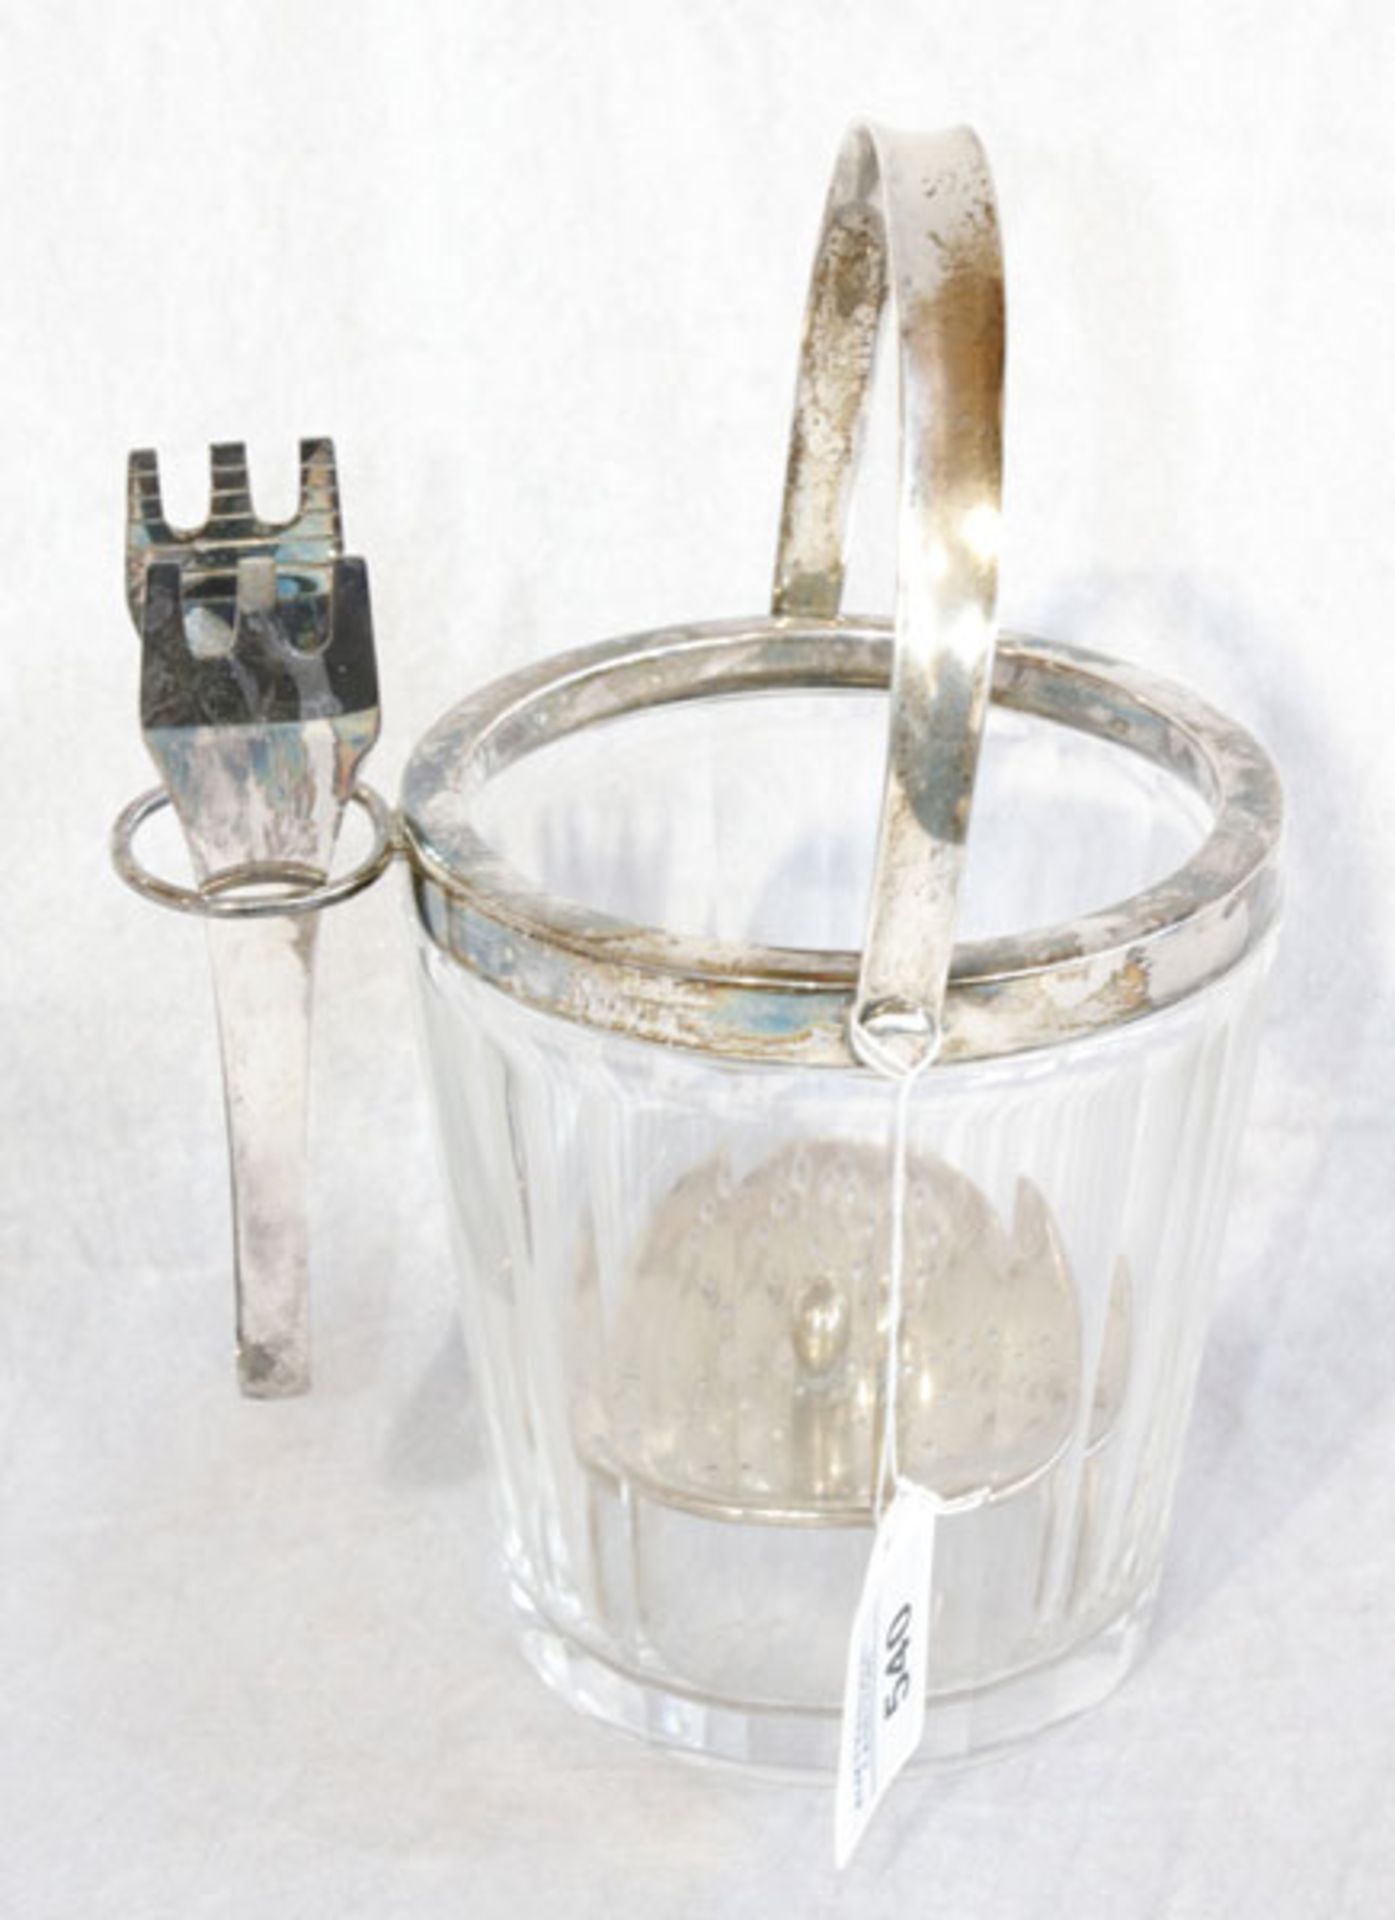 Eisbehälter, Glas mit 835 Silbermontierung, Eiszange 800 Silber, H 23 cm, Gebrauchsspuren